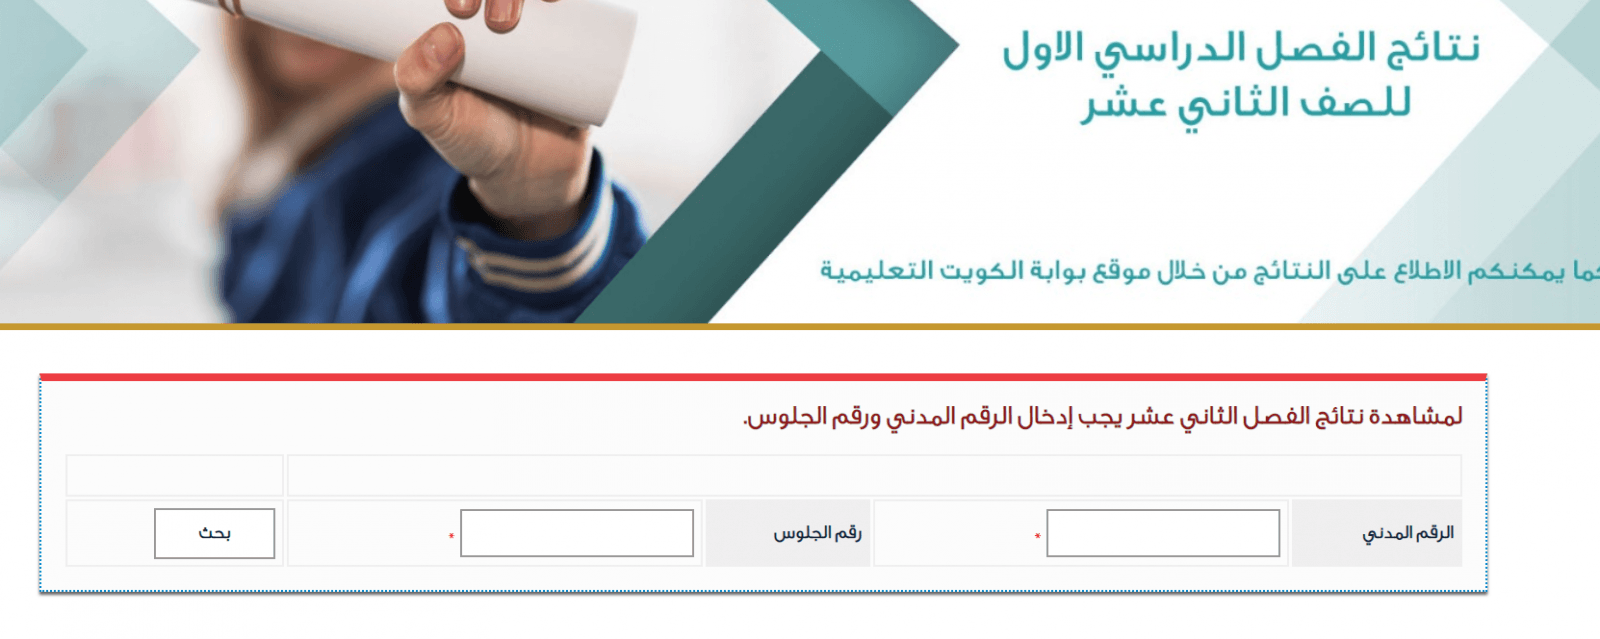 نتائج الثانوية العامة الكويت 2019 موقع وزارة التربية "المربع الإلكتروني" برقم الجلوس والرقم المدني 